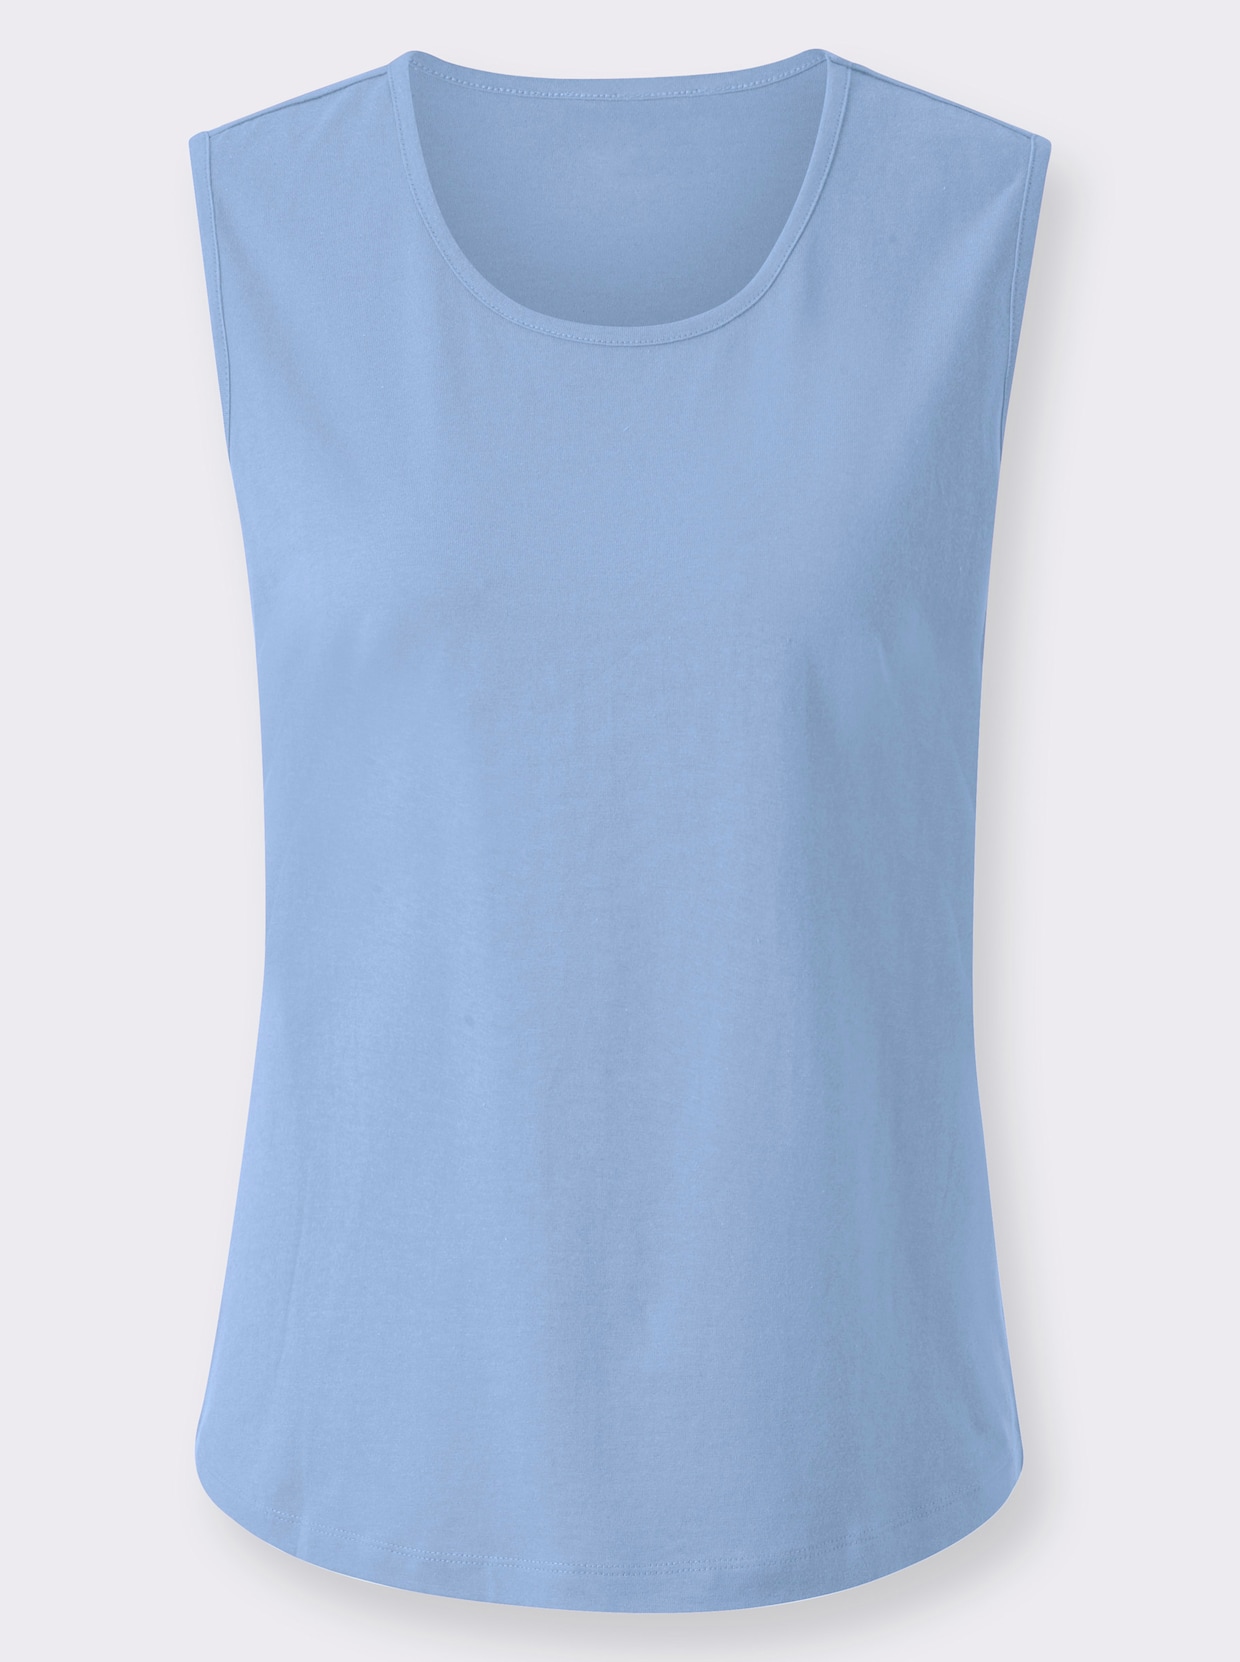 Shirttop - himmelblau + himmelblau-weiss-bedruckt